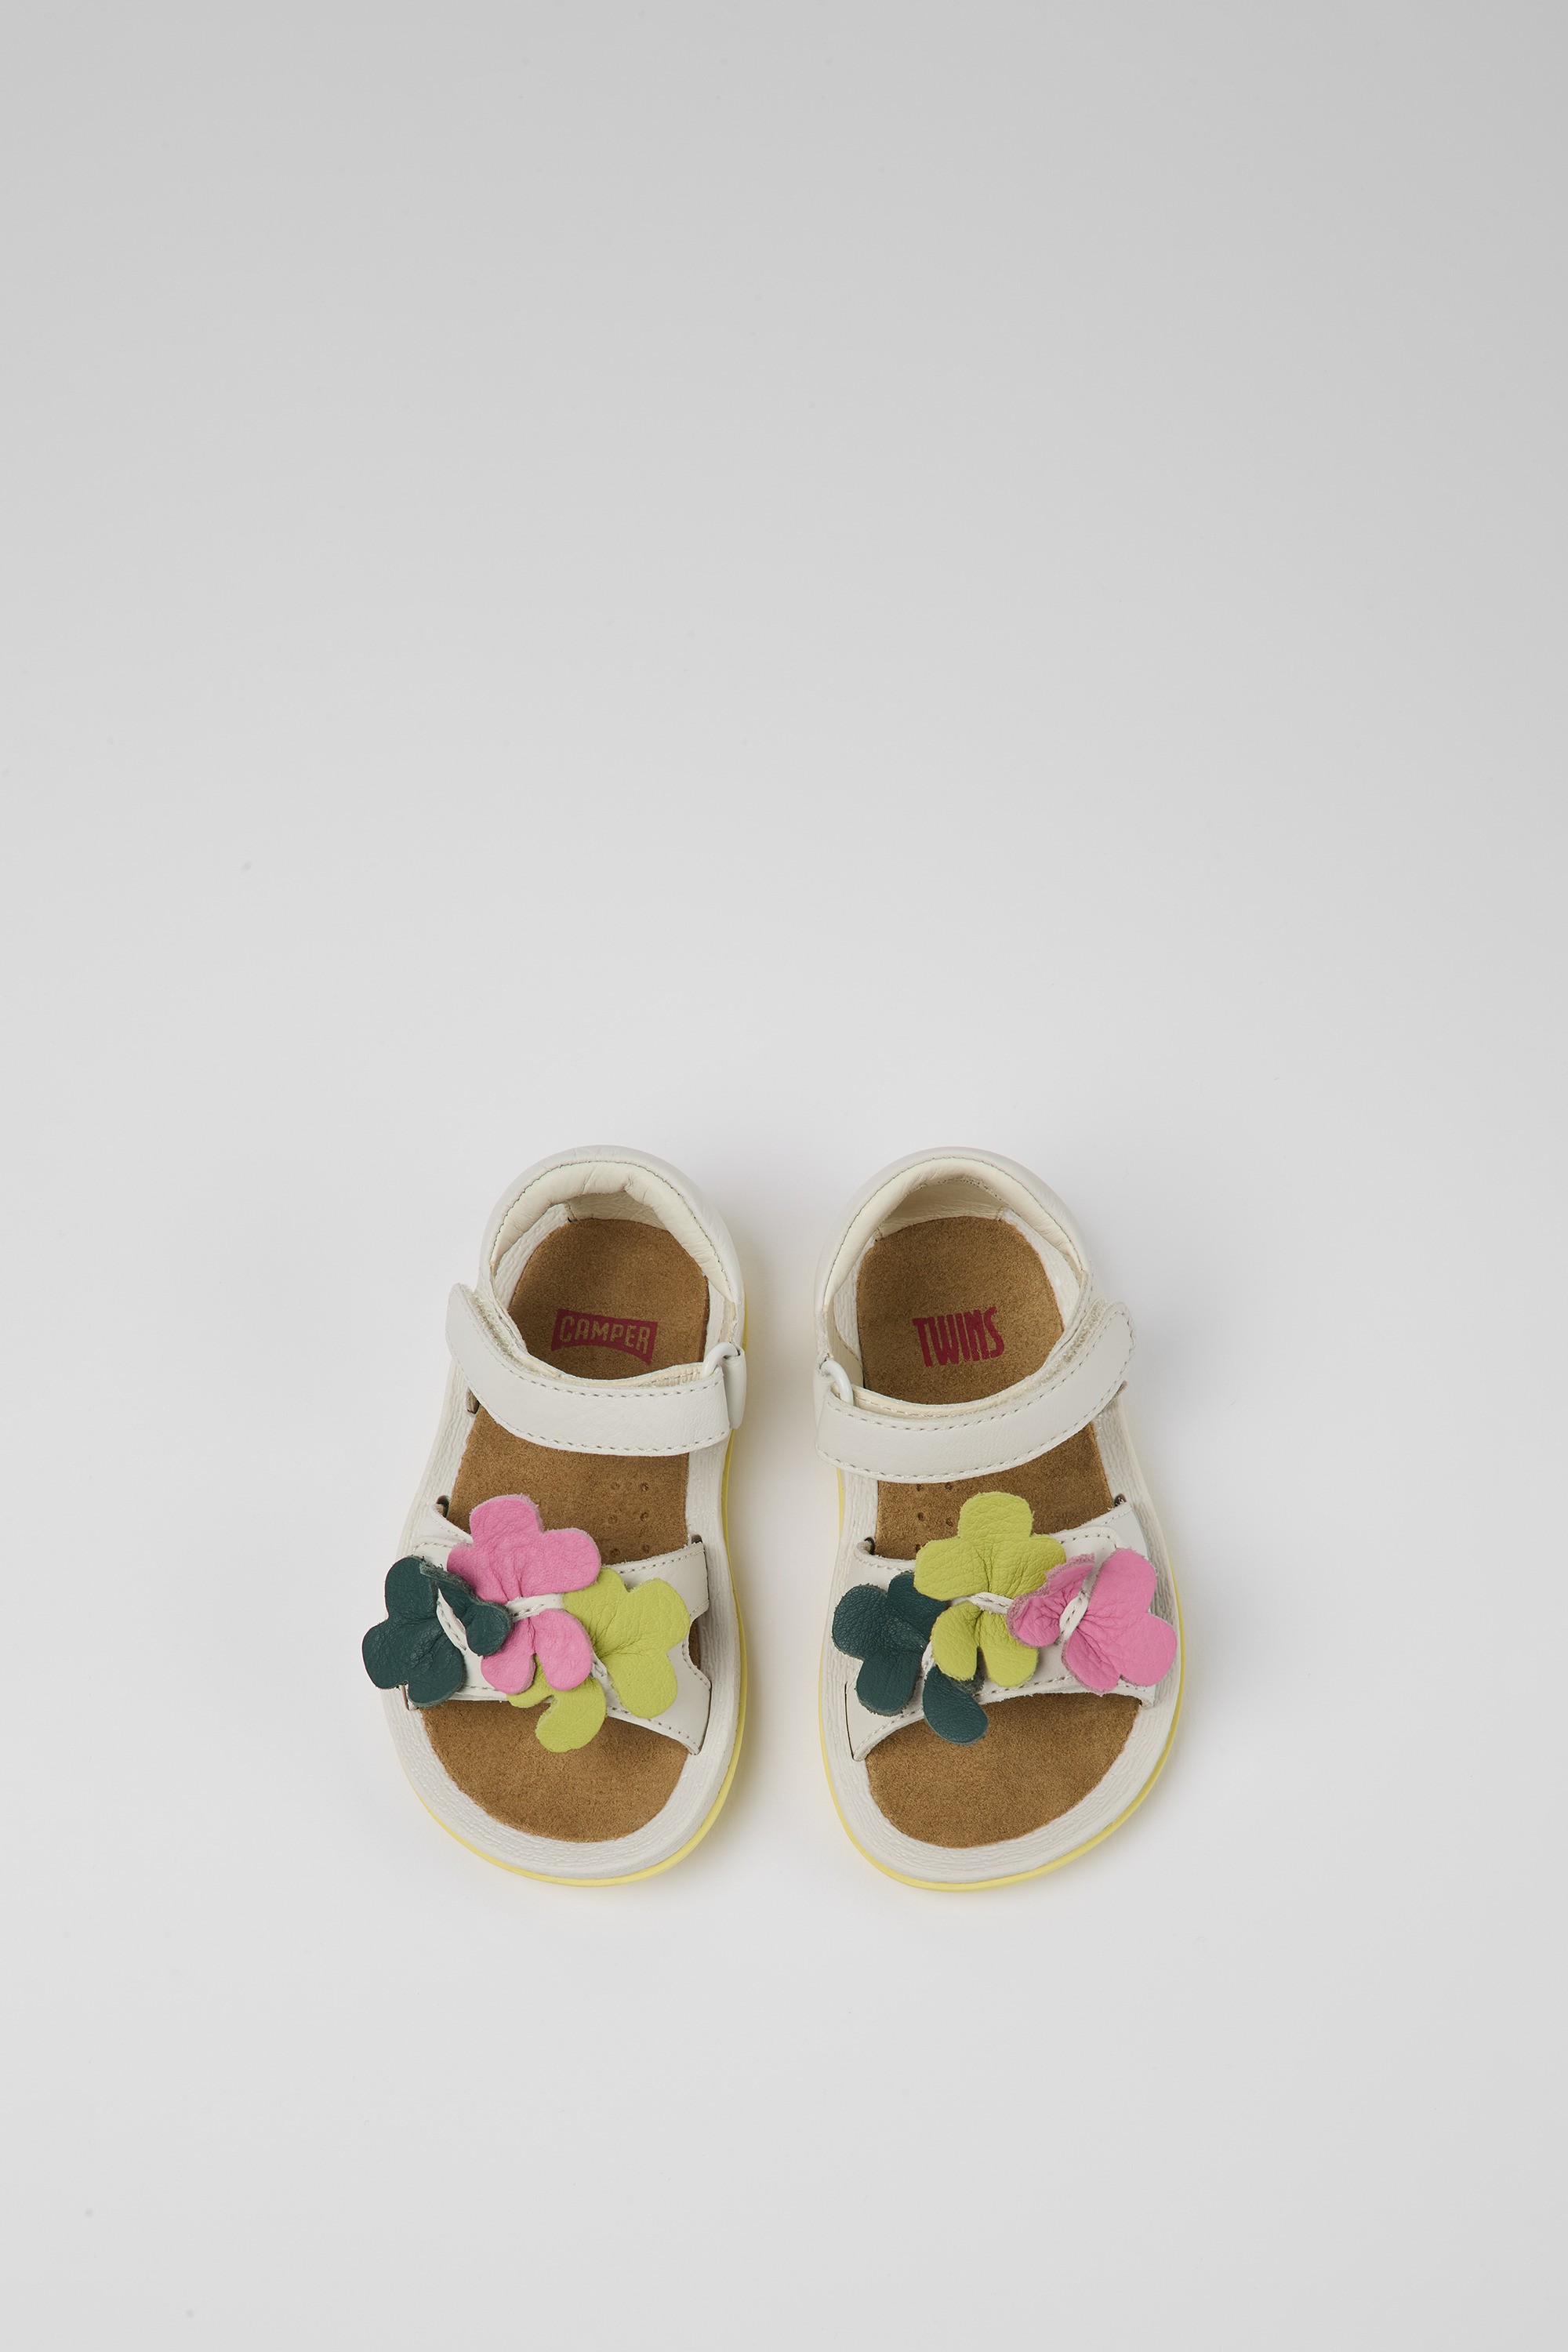 Ashley Furman Bekentenis Sovjet Twins White Sandals for Kids - Spring/Summer collection - Camper USA